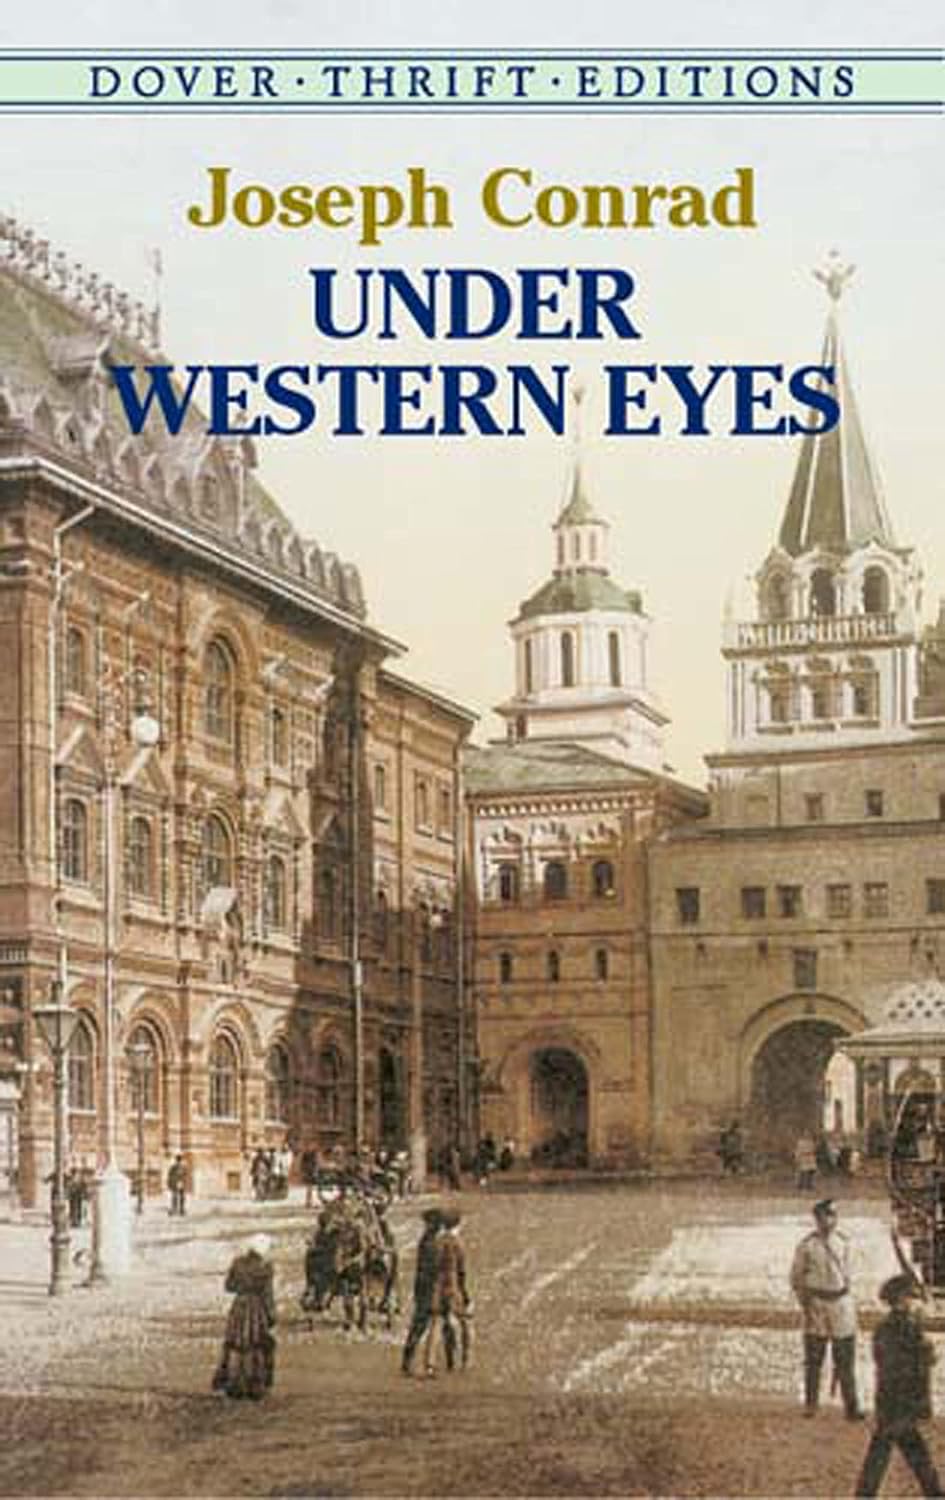 Under Western Eyes (Conrad - Dover ed.)